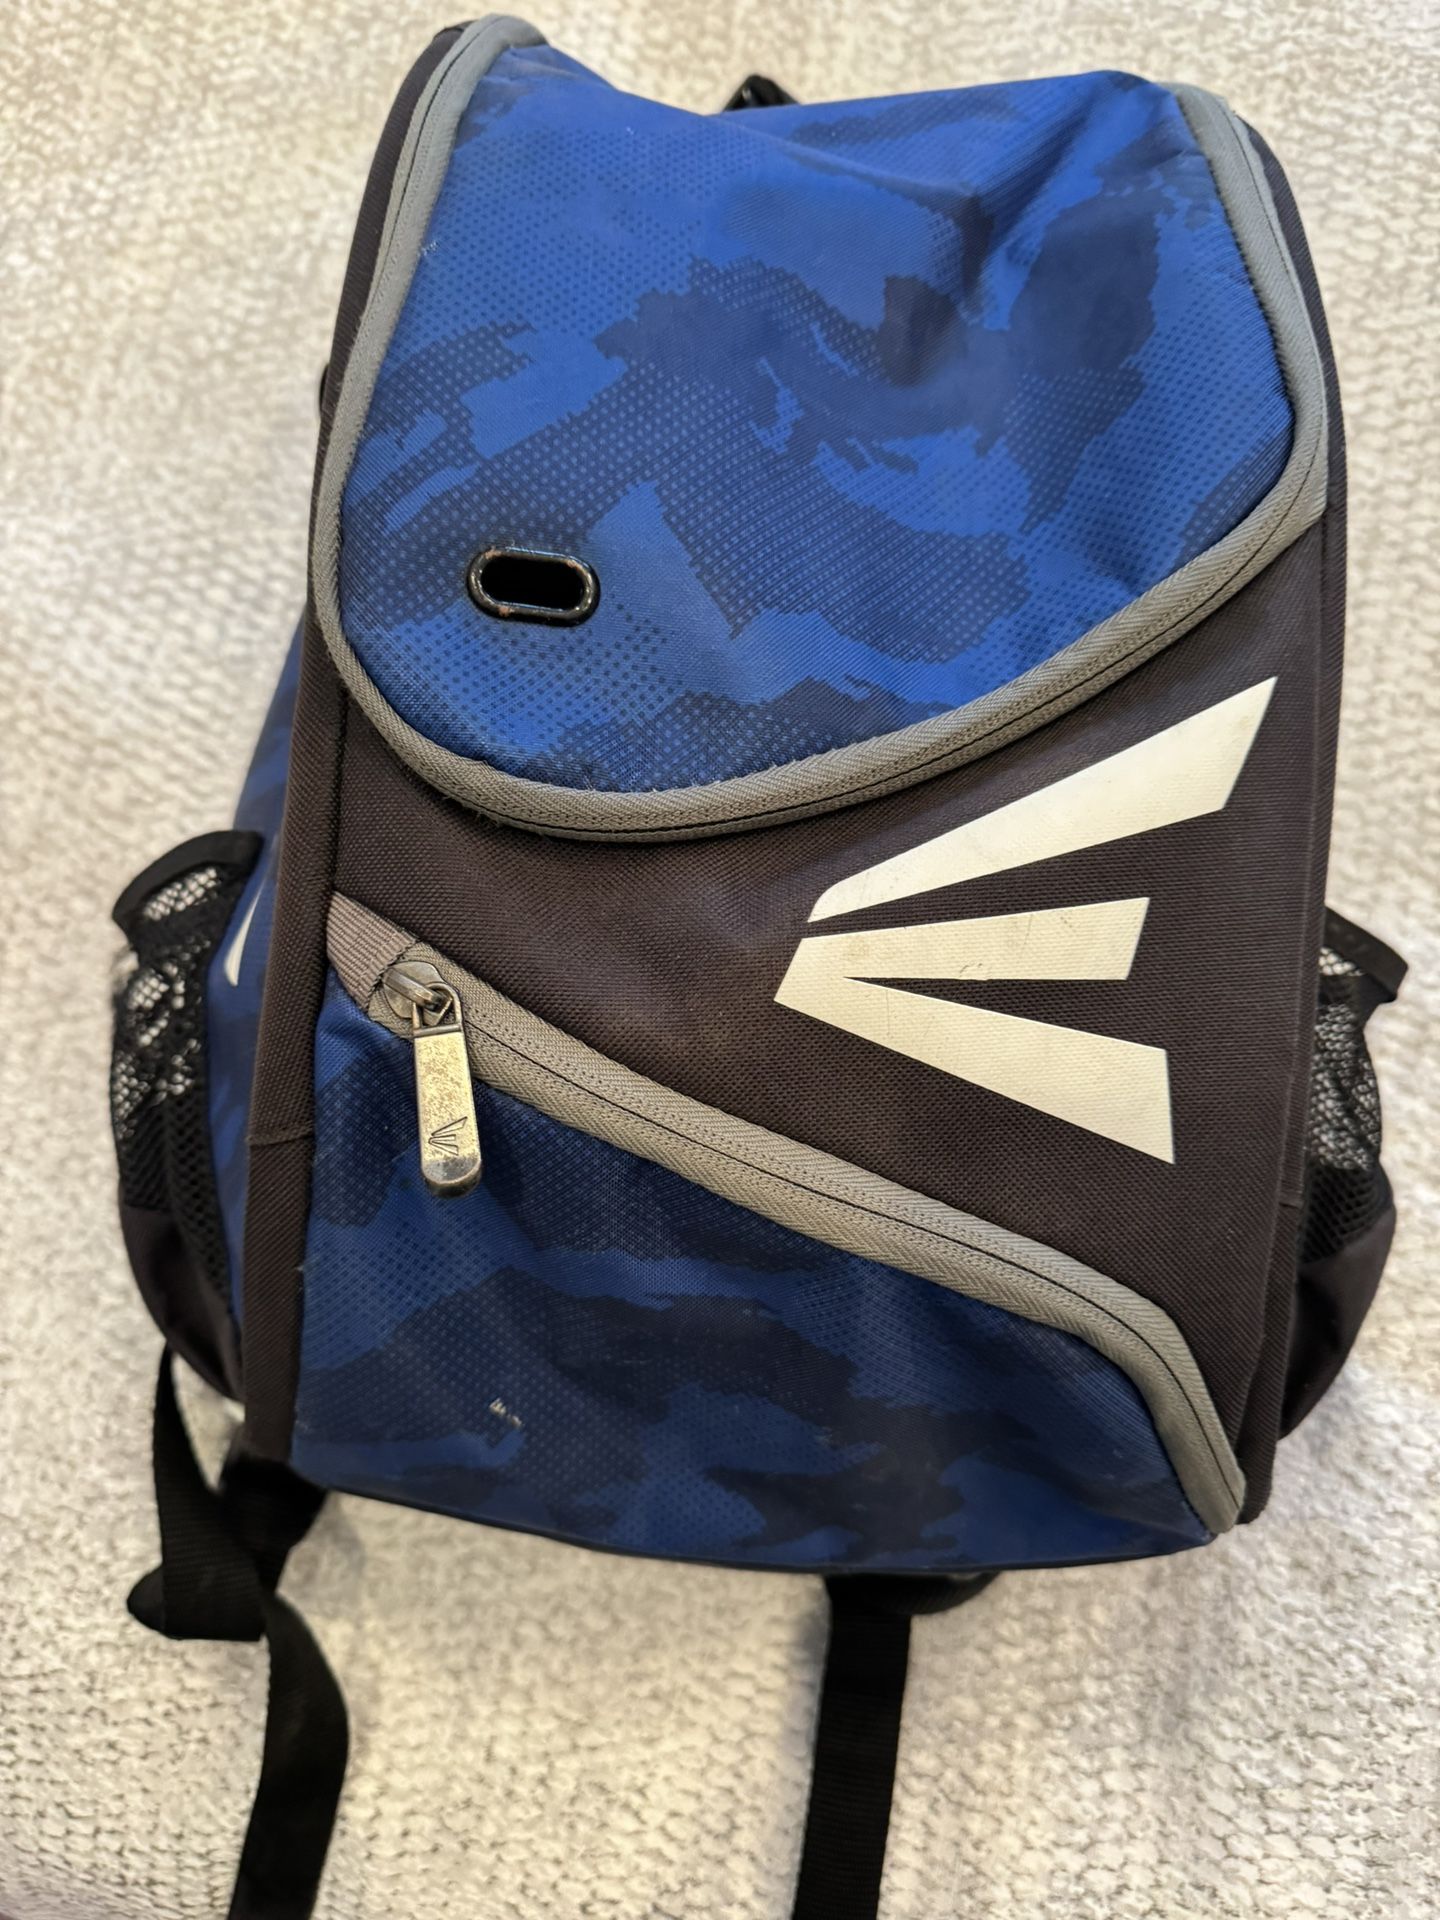 Easton Youth Baseball Backpack Bag 2 Bat Sleeves 